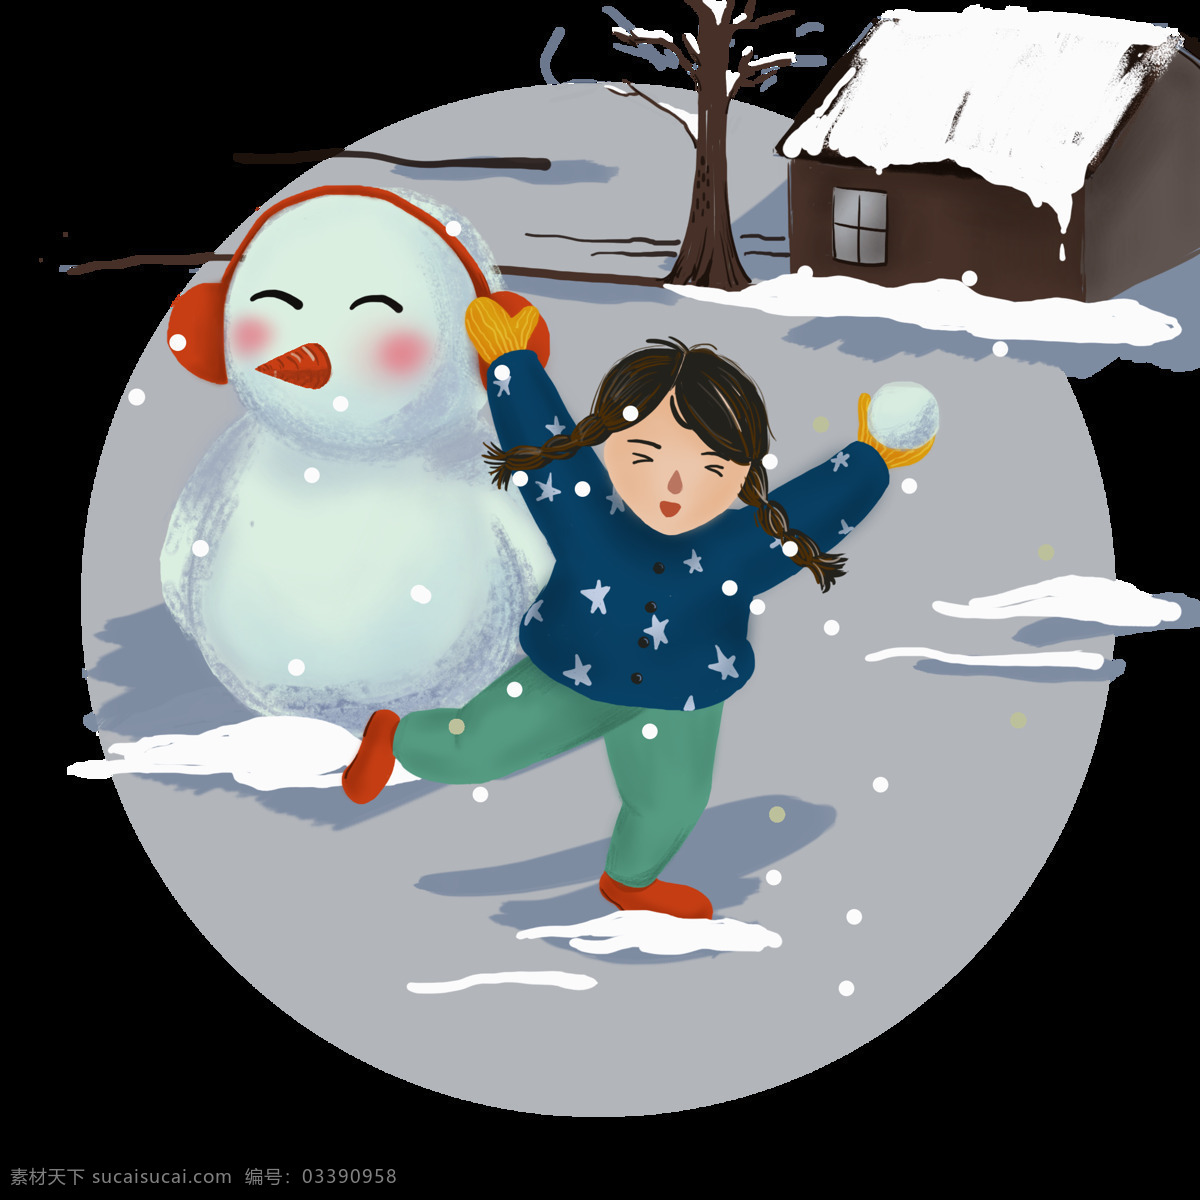 下雪天 雪地 里 打雪仗 孩子 手绘 商用 下雪 冬天 小女孩 小朋友 寒冷